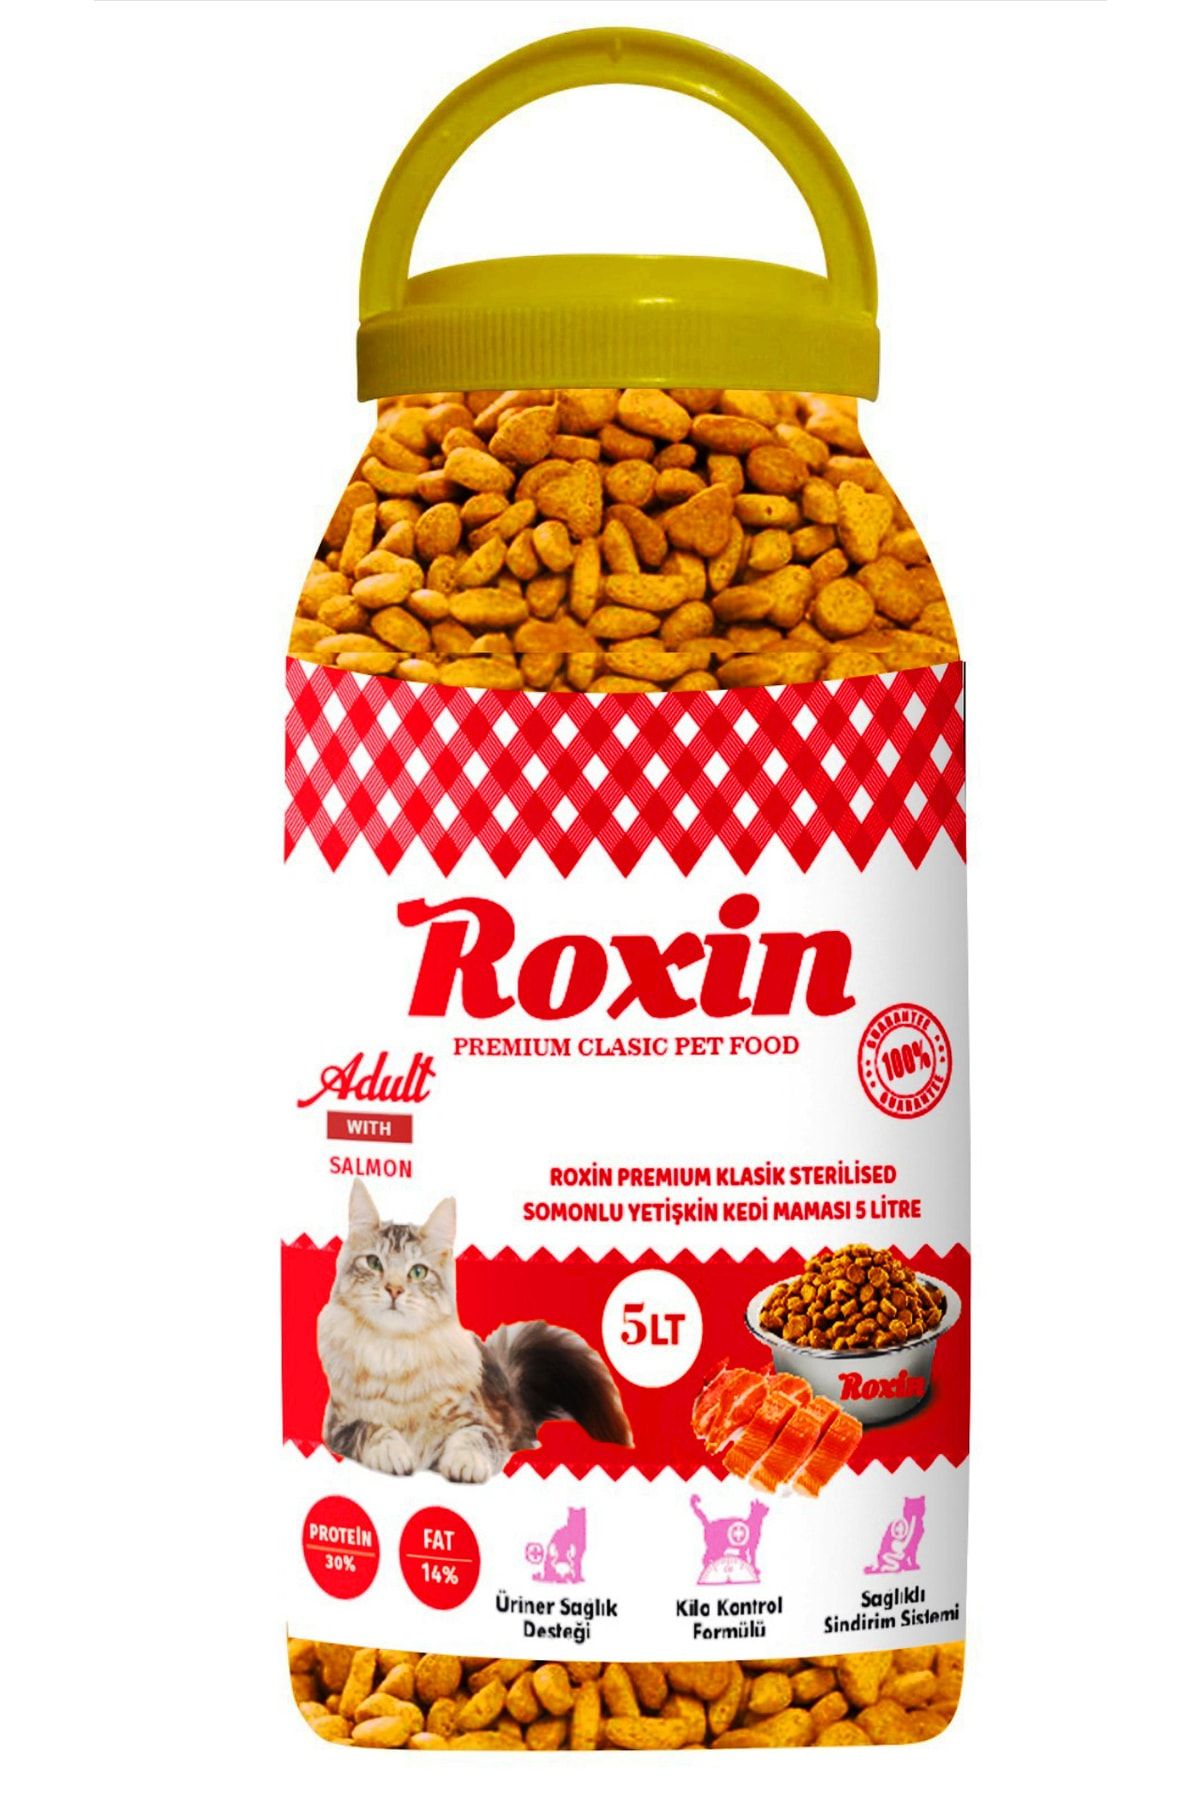 Roxin Premıum Klasik Sterilised Somonlu Yetişkin Kedi Maması 5 Lt